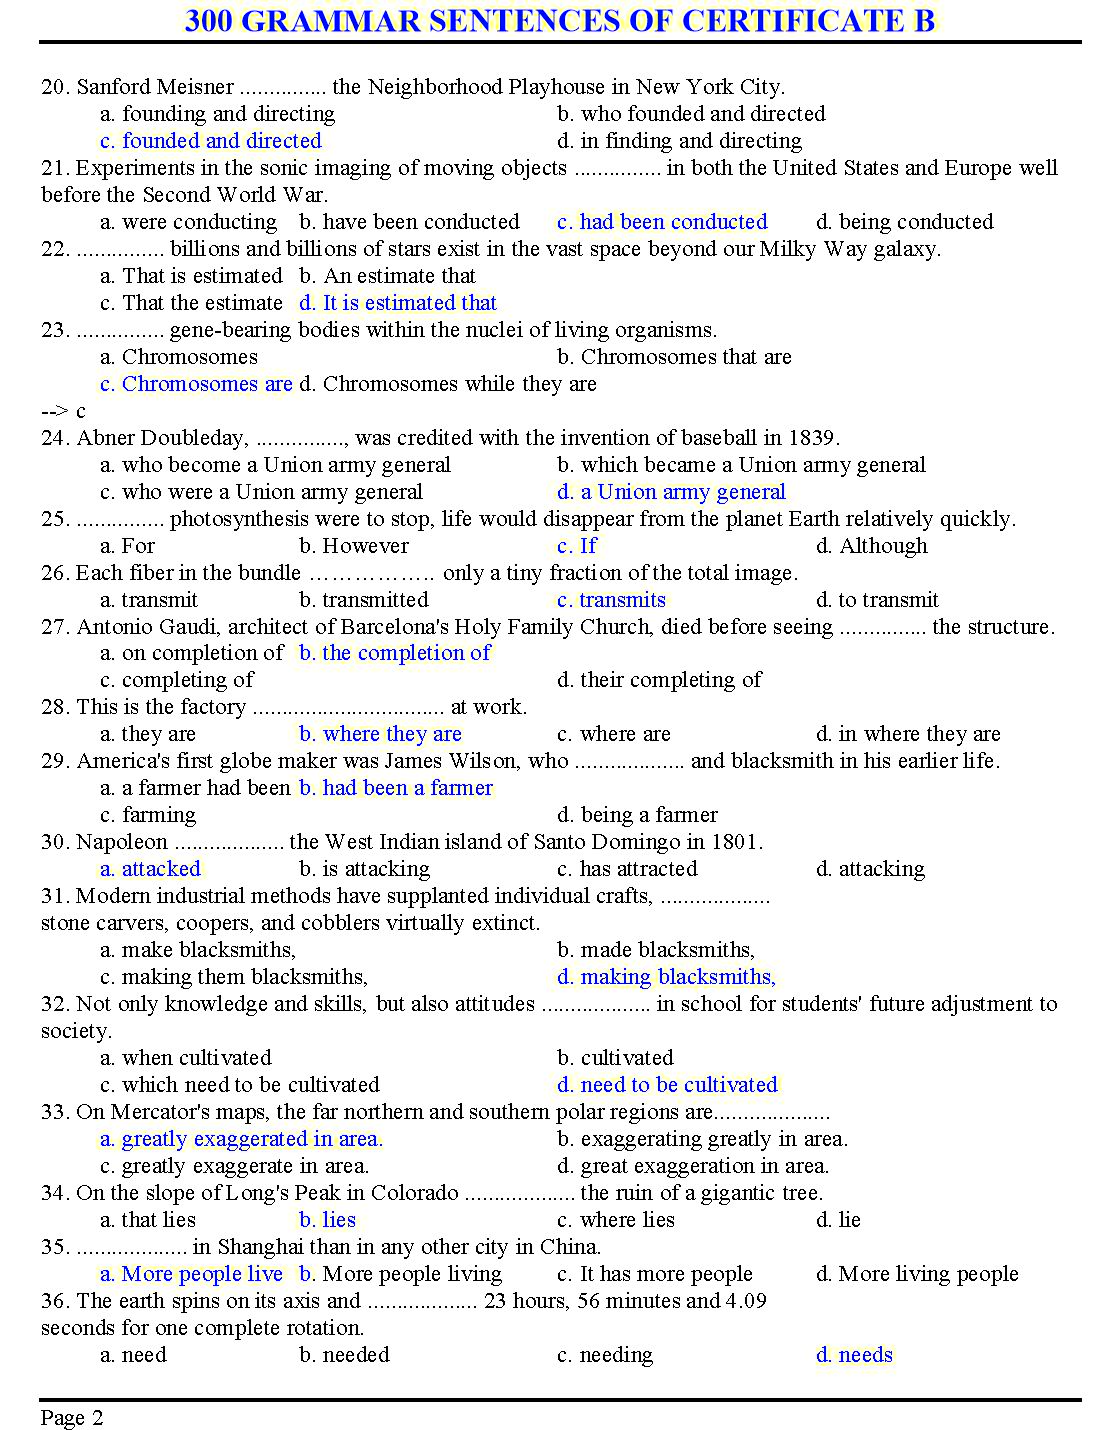 300 grammar sentences of certificate B trang 2